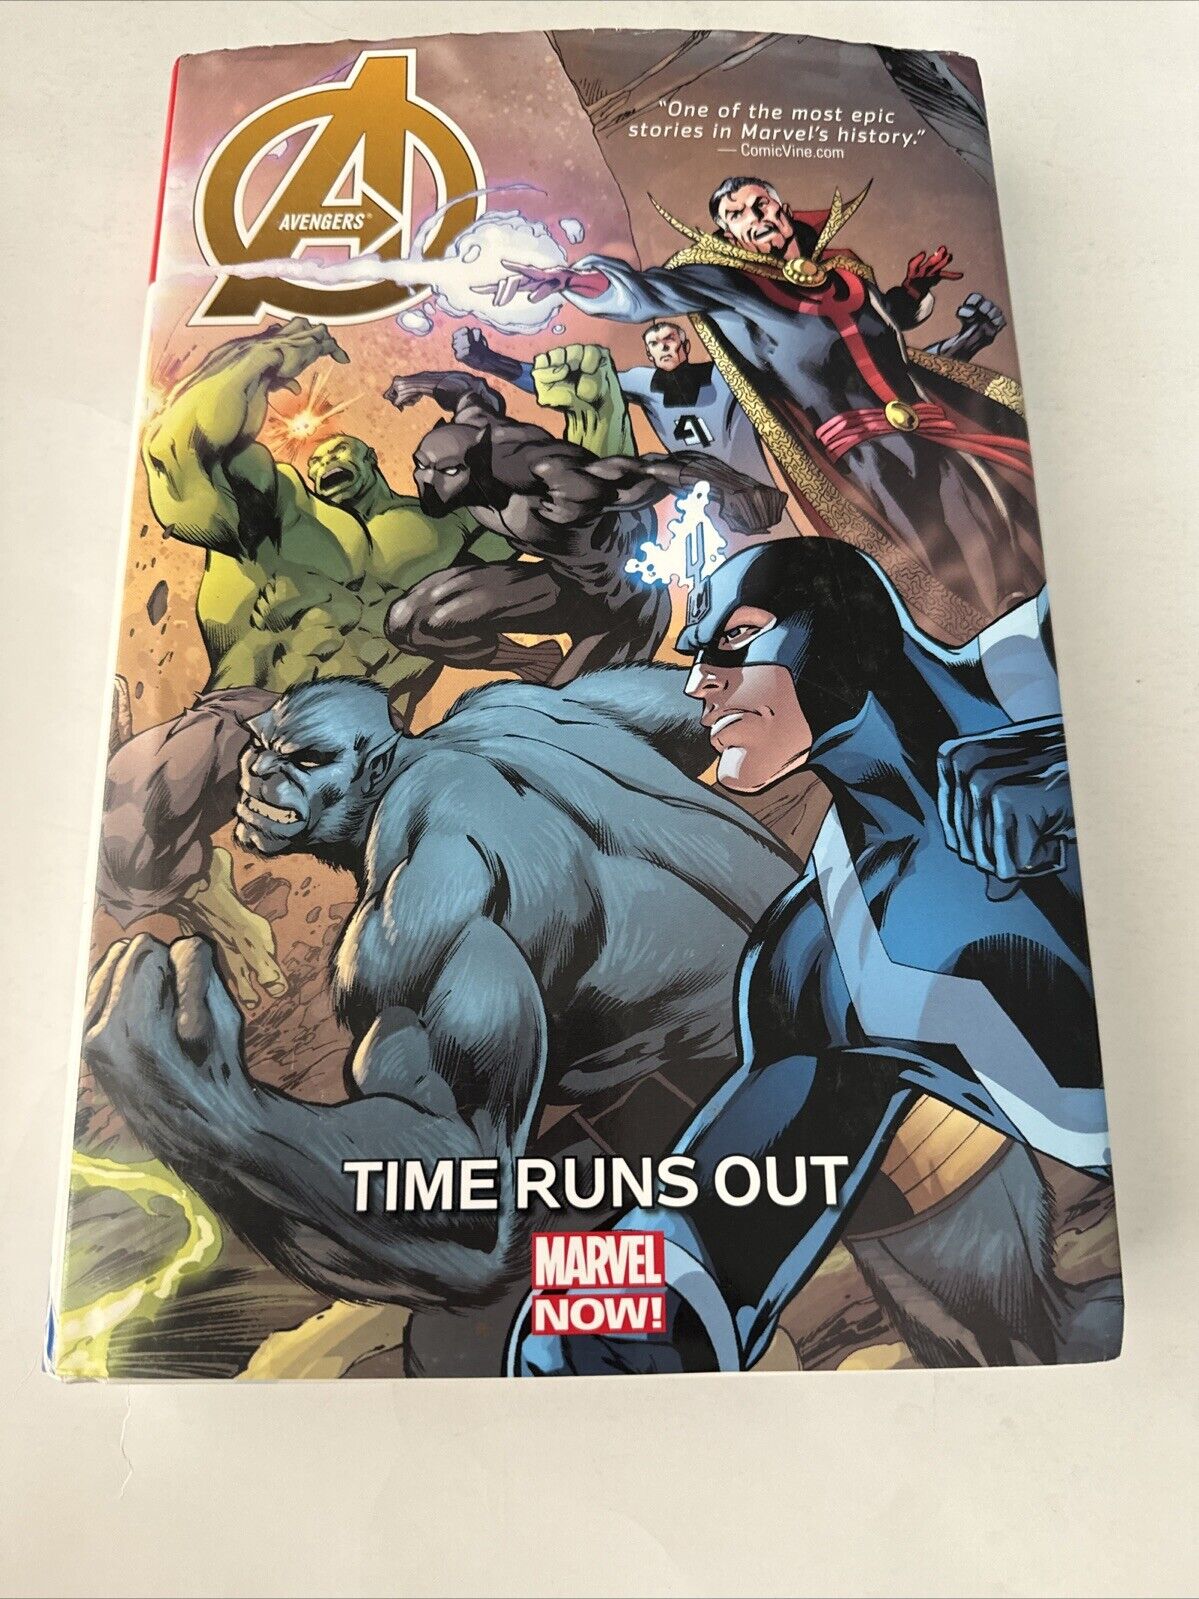 The Avengers: Time Runs Out  (Marvel Comics 2015) Hardback